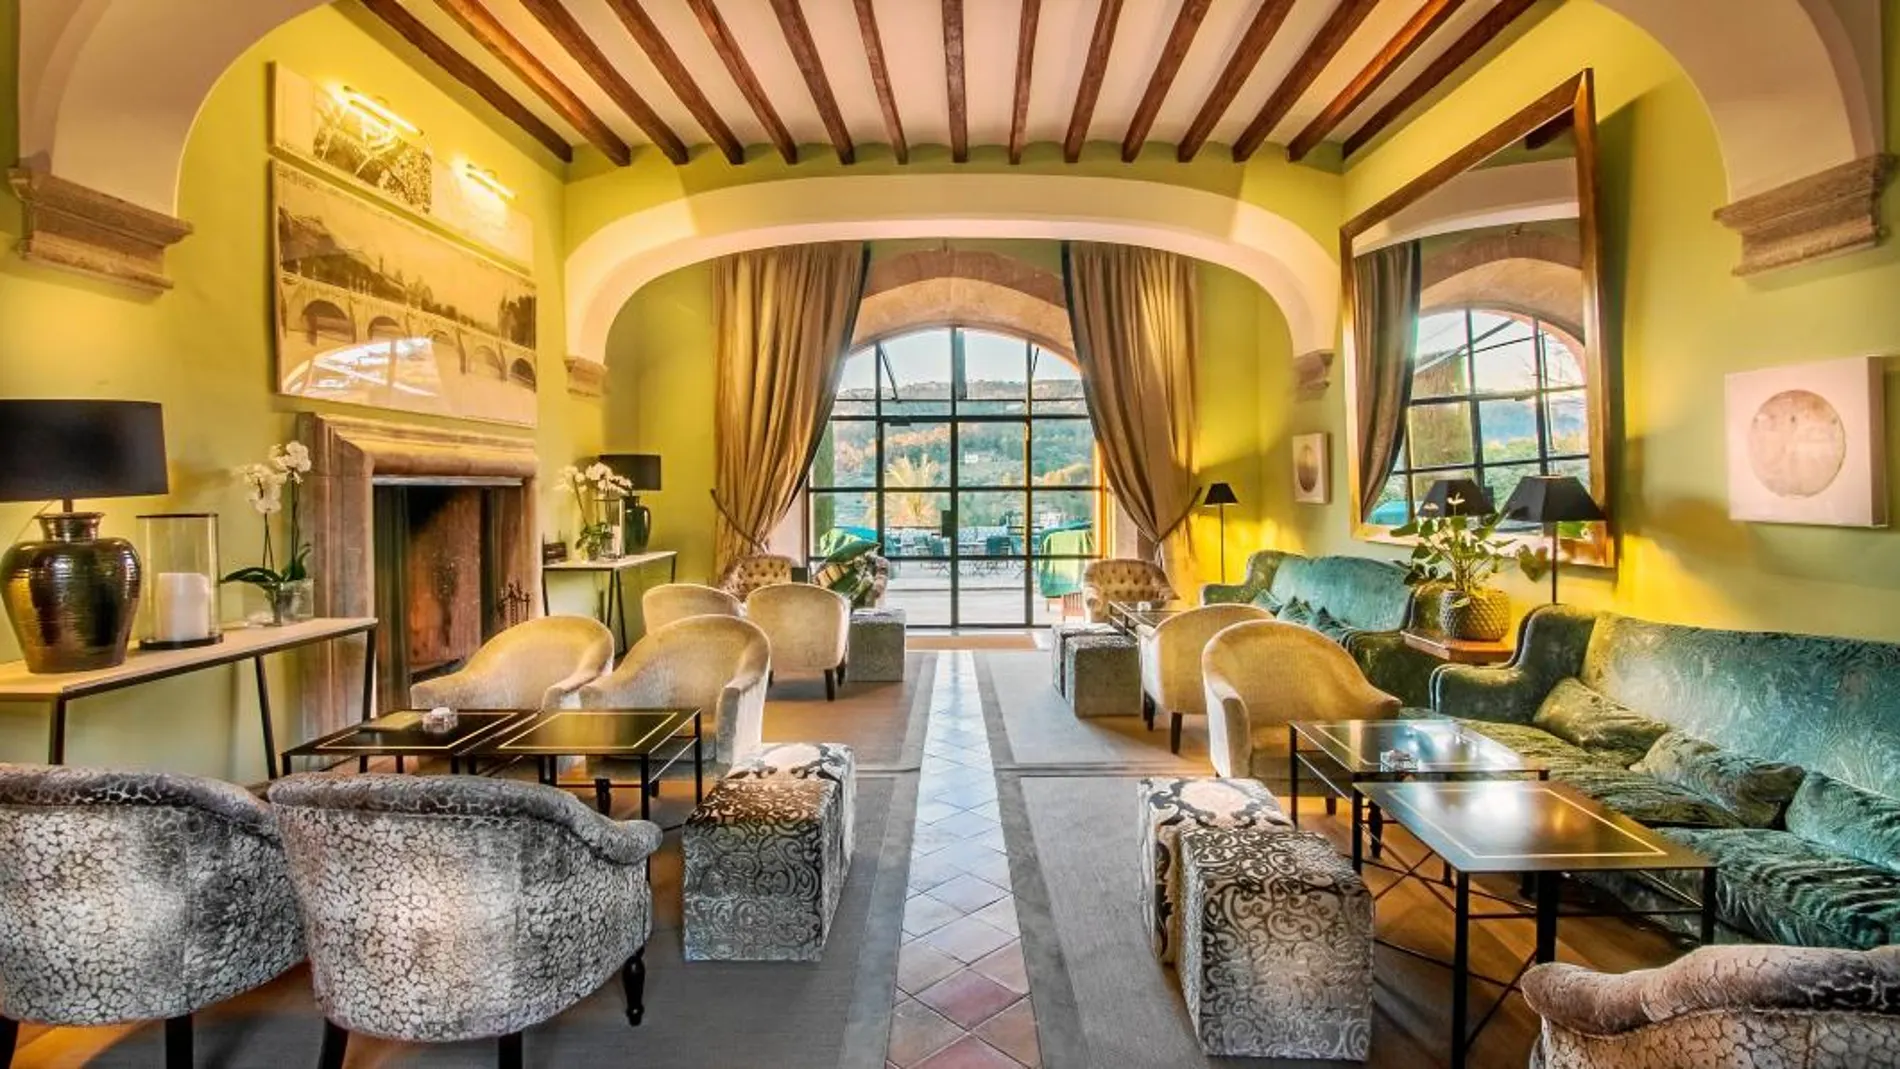 El hotel se caracteriza por la elegancia de su mobiliario, que crea espacios muy acogedores.